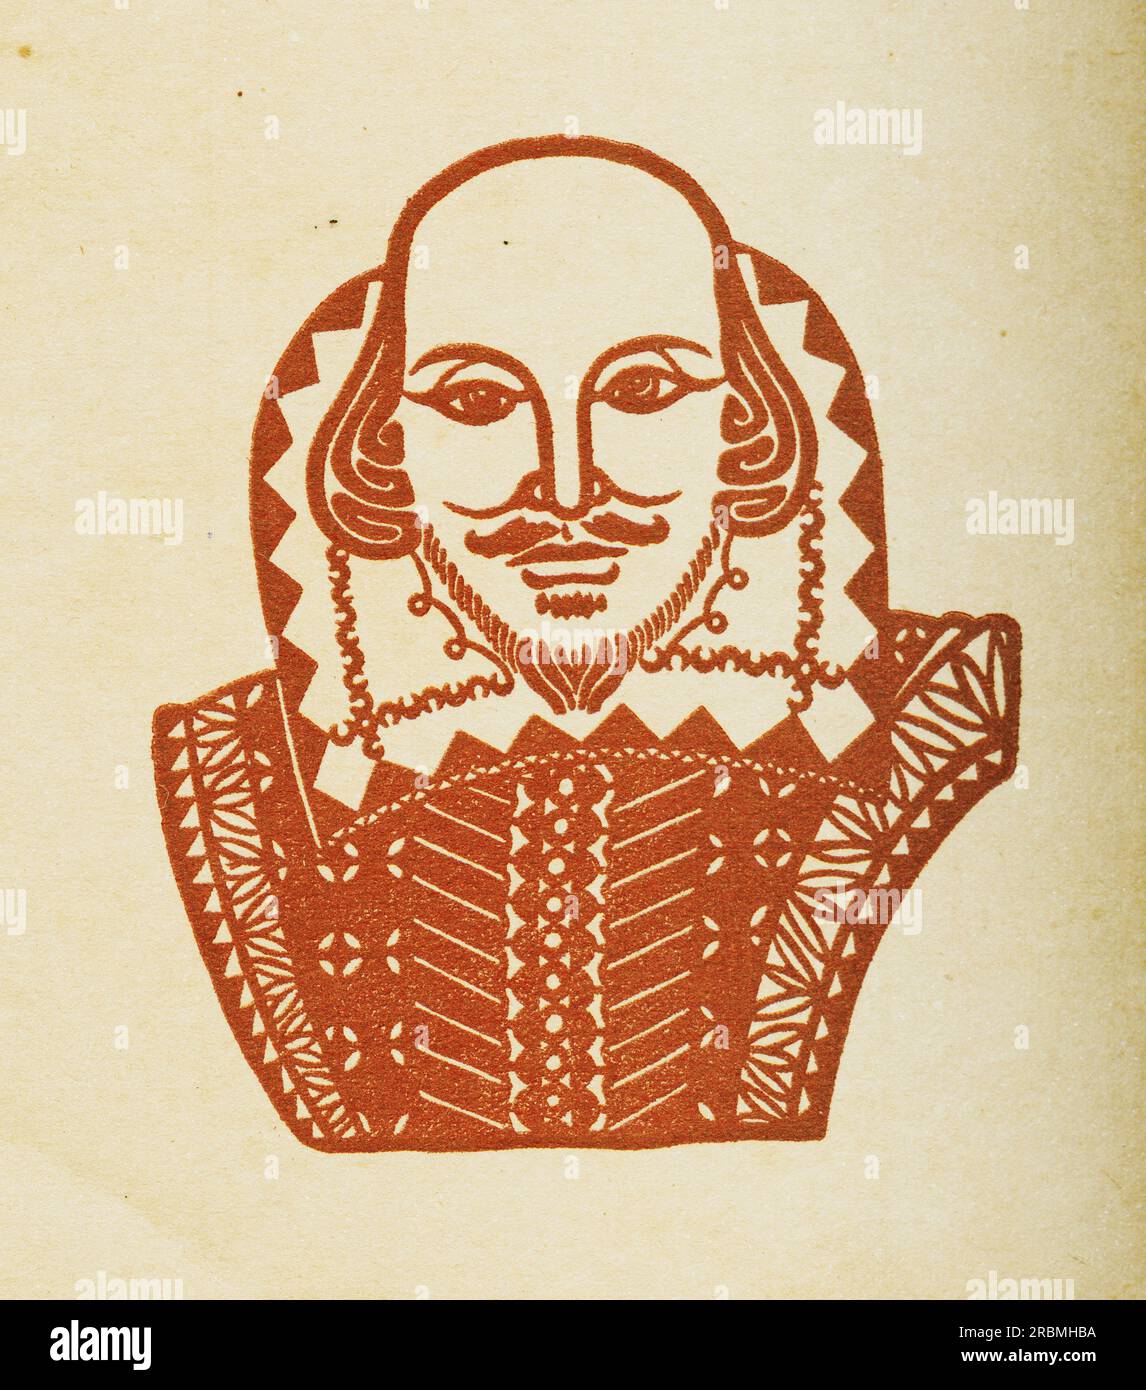 Portrait von William Shakespeare, von Meng Shi, einem chinesischen Künstler Stockfoto